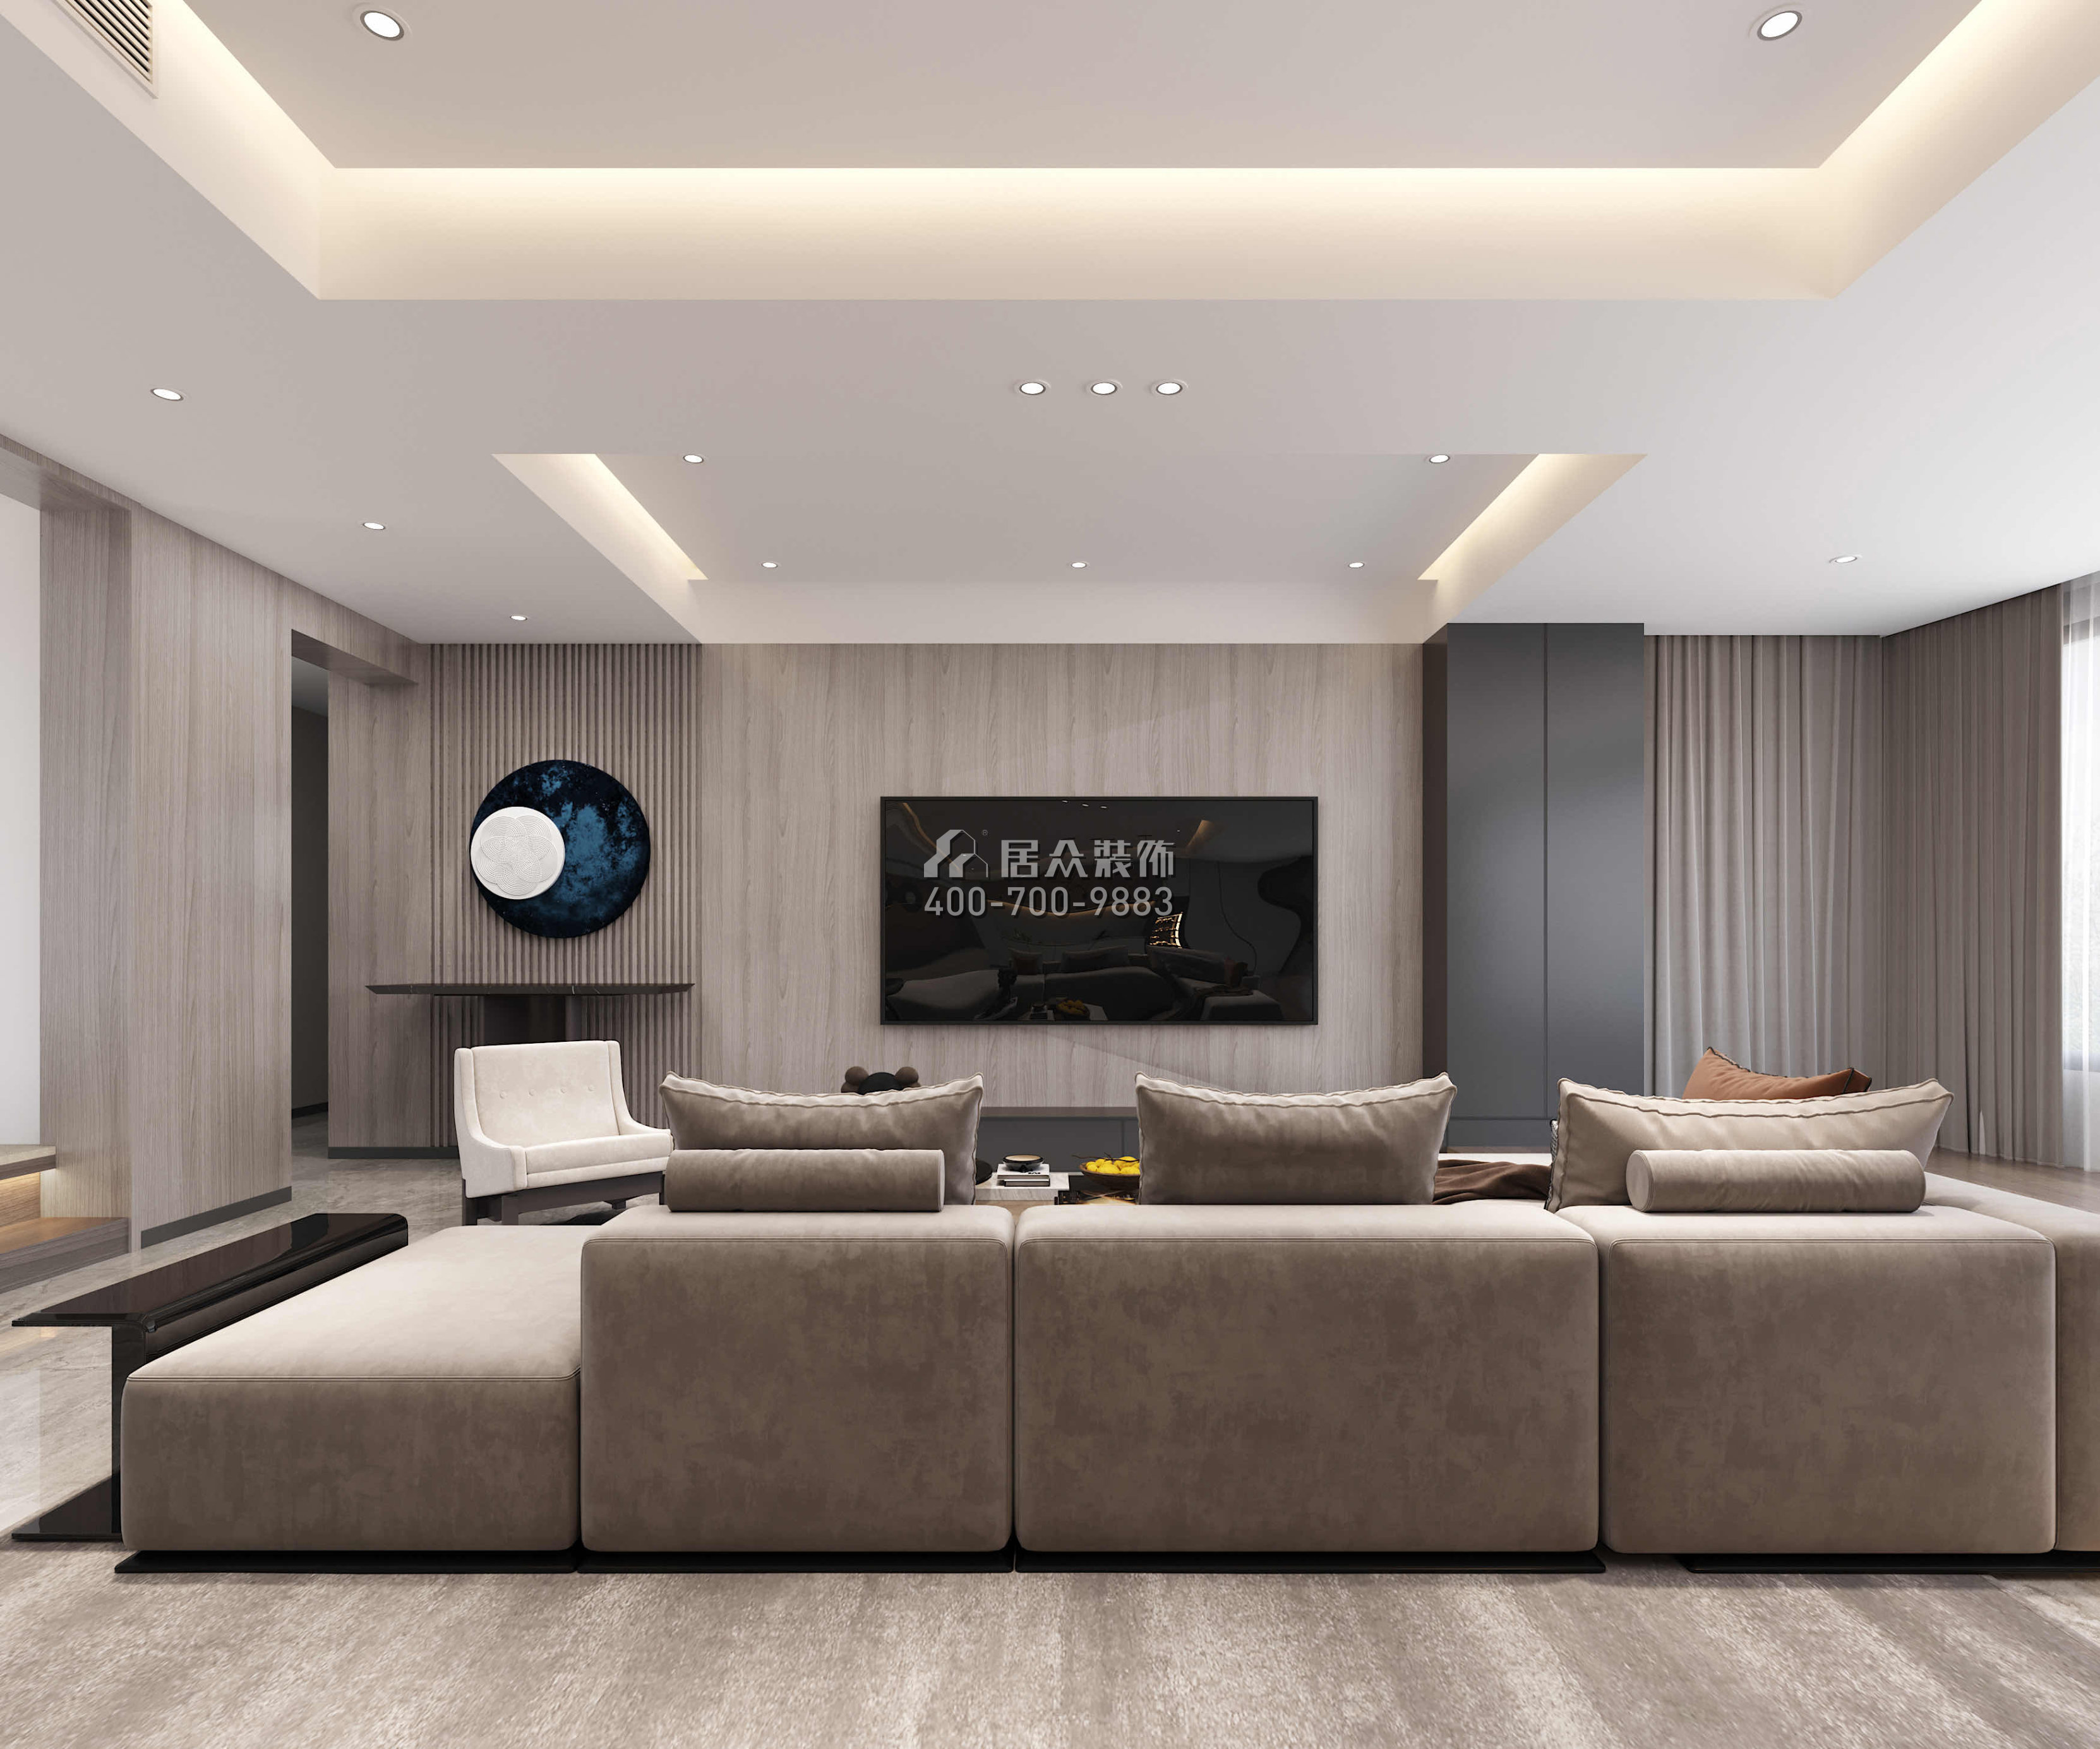 华发绿洋湾168平方米现代简约风格平层户型客厅装修效果图